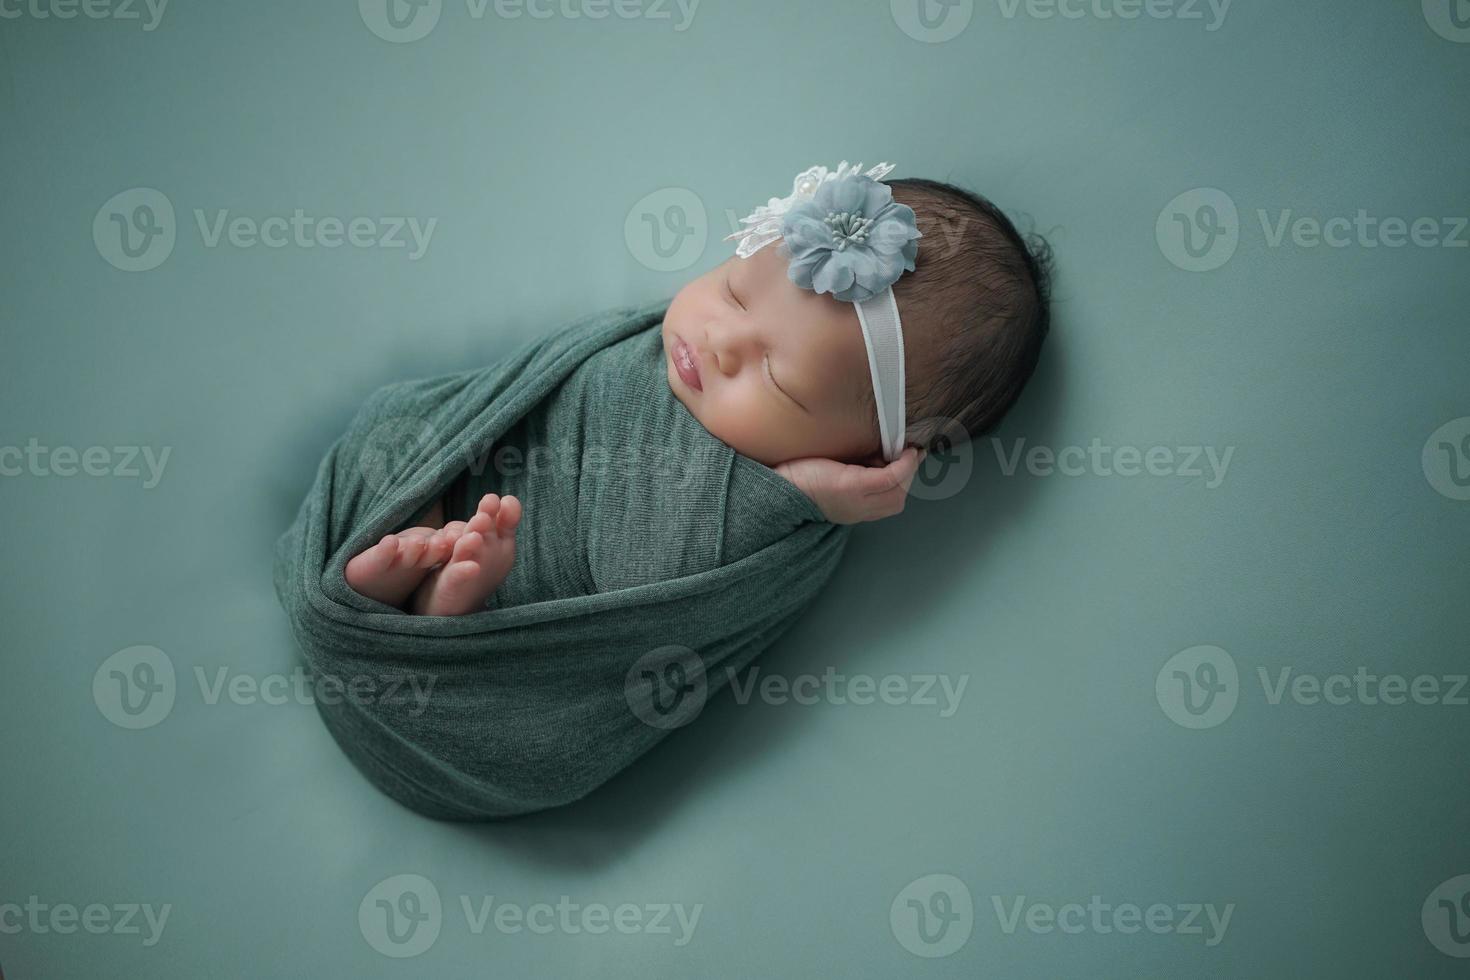 petit nouveau-né enveloppé d'une écharpe bleue avec un bandage sur la tête se trouve sur une couverture douce photo